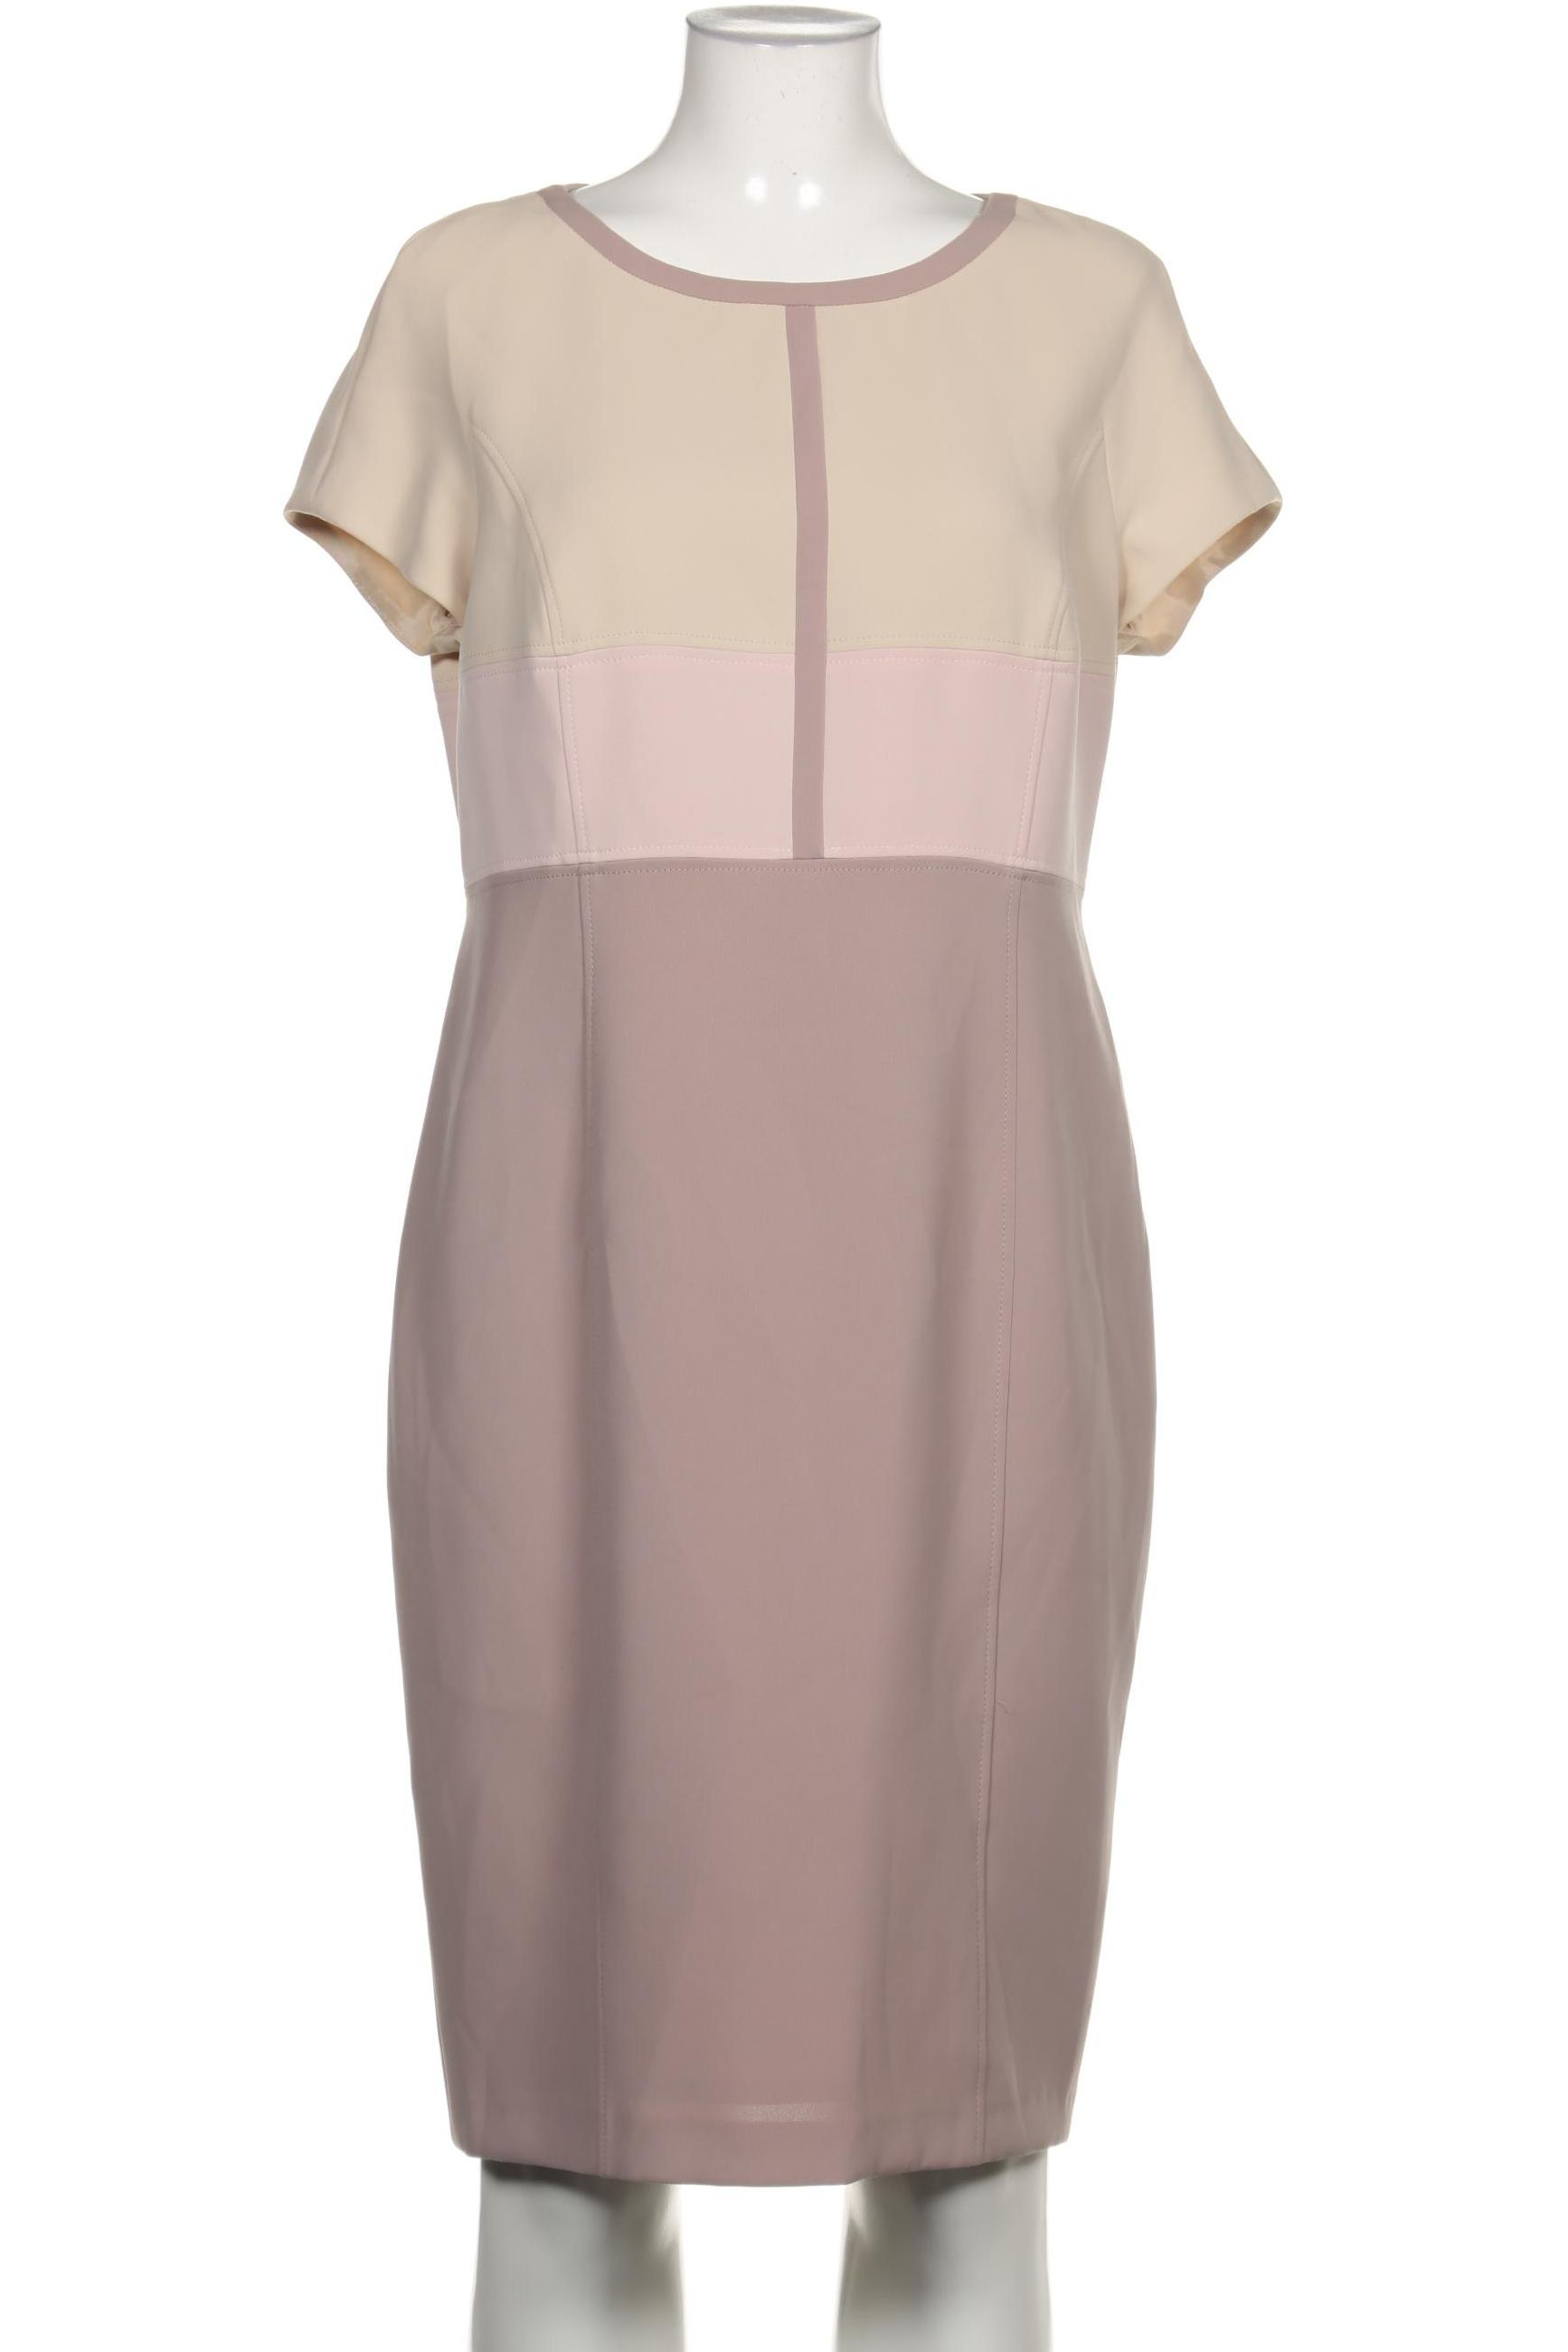 Basler Damen Kleid, pink, Gr. 42 von Basler